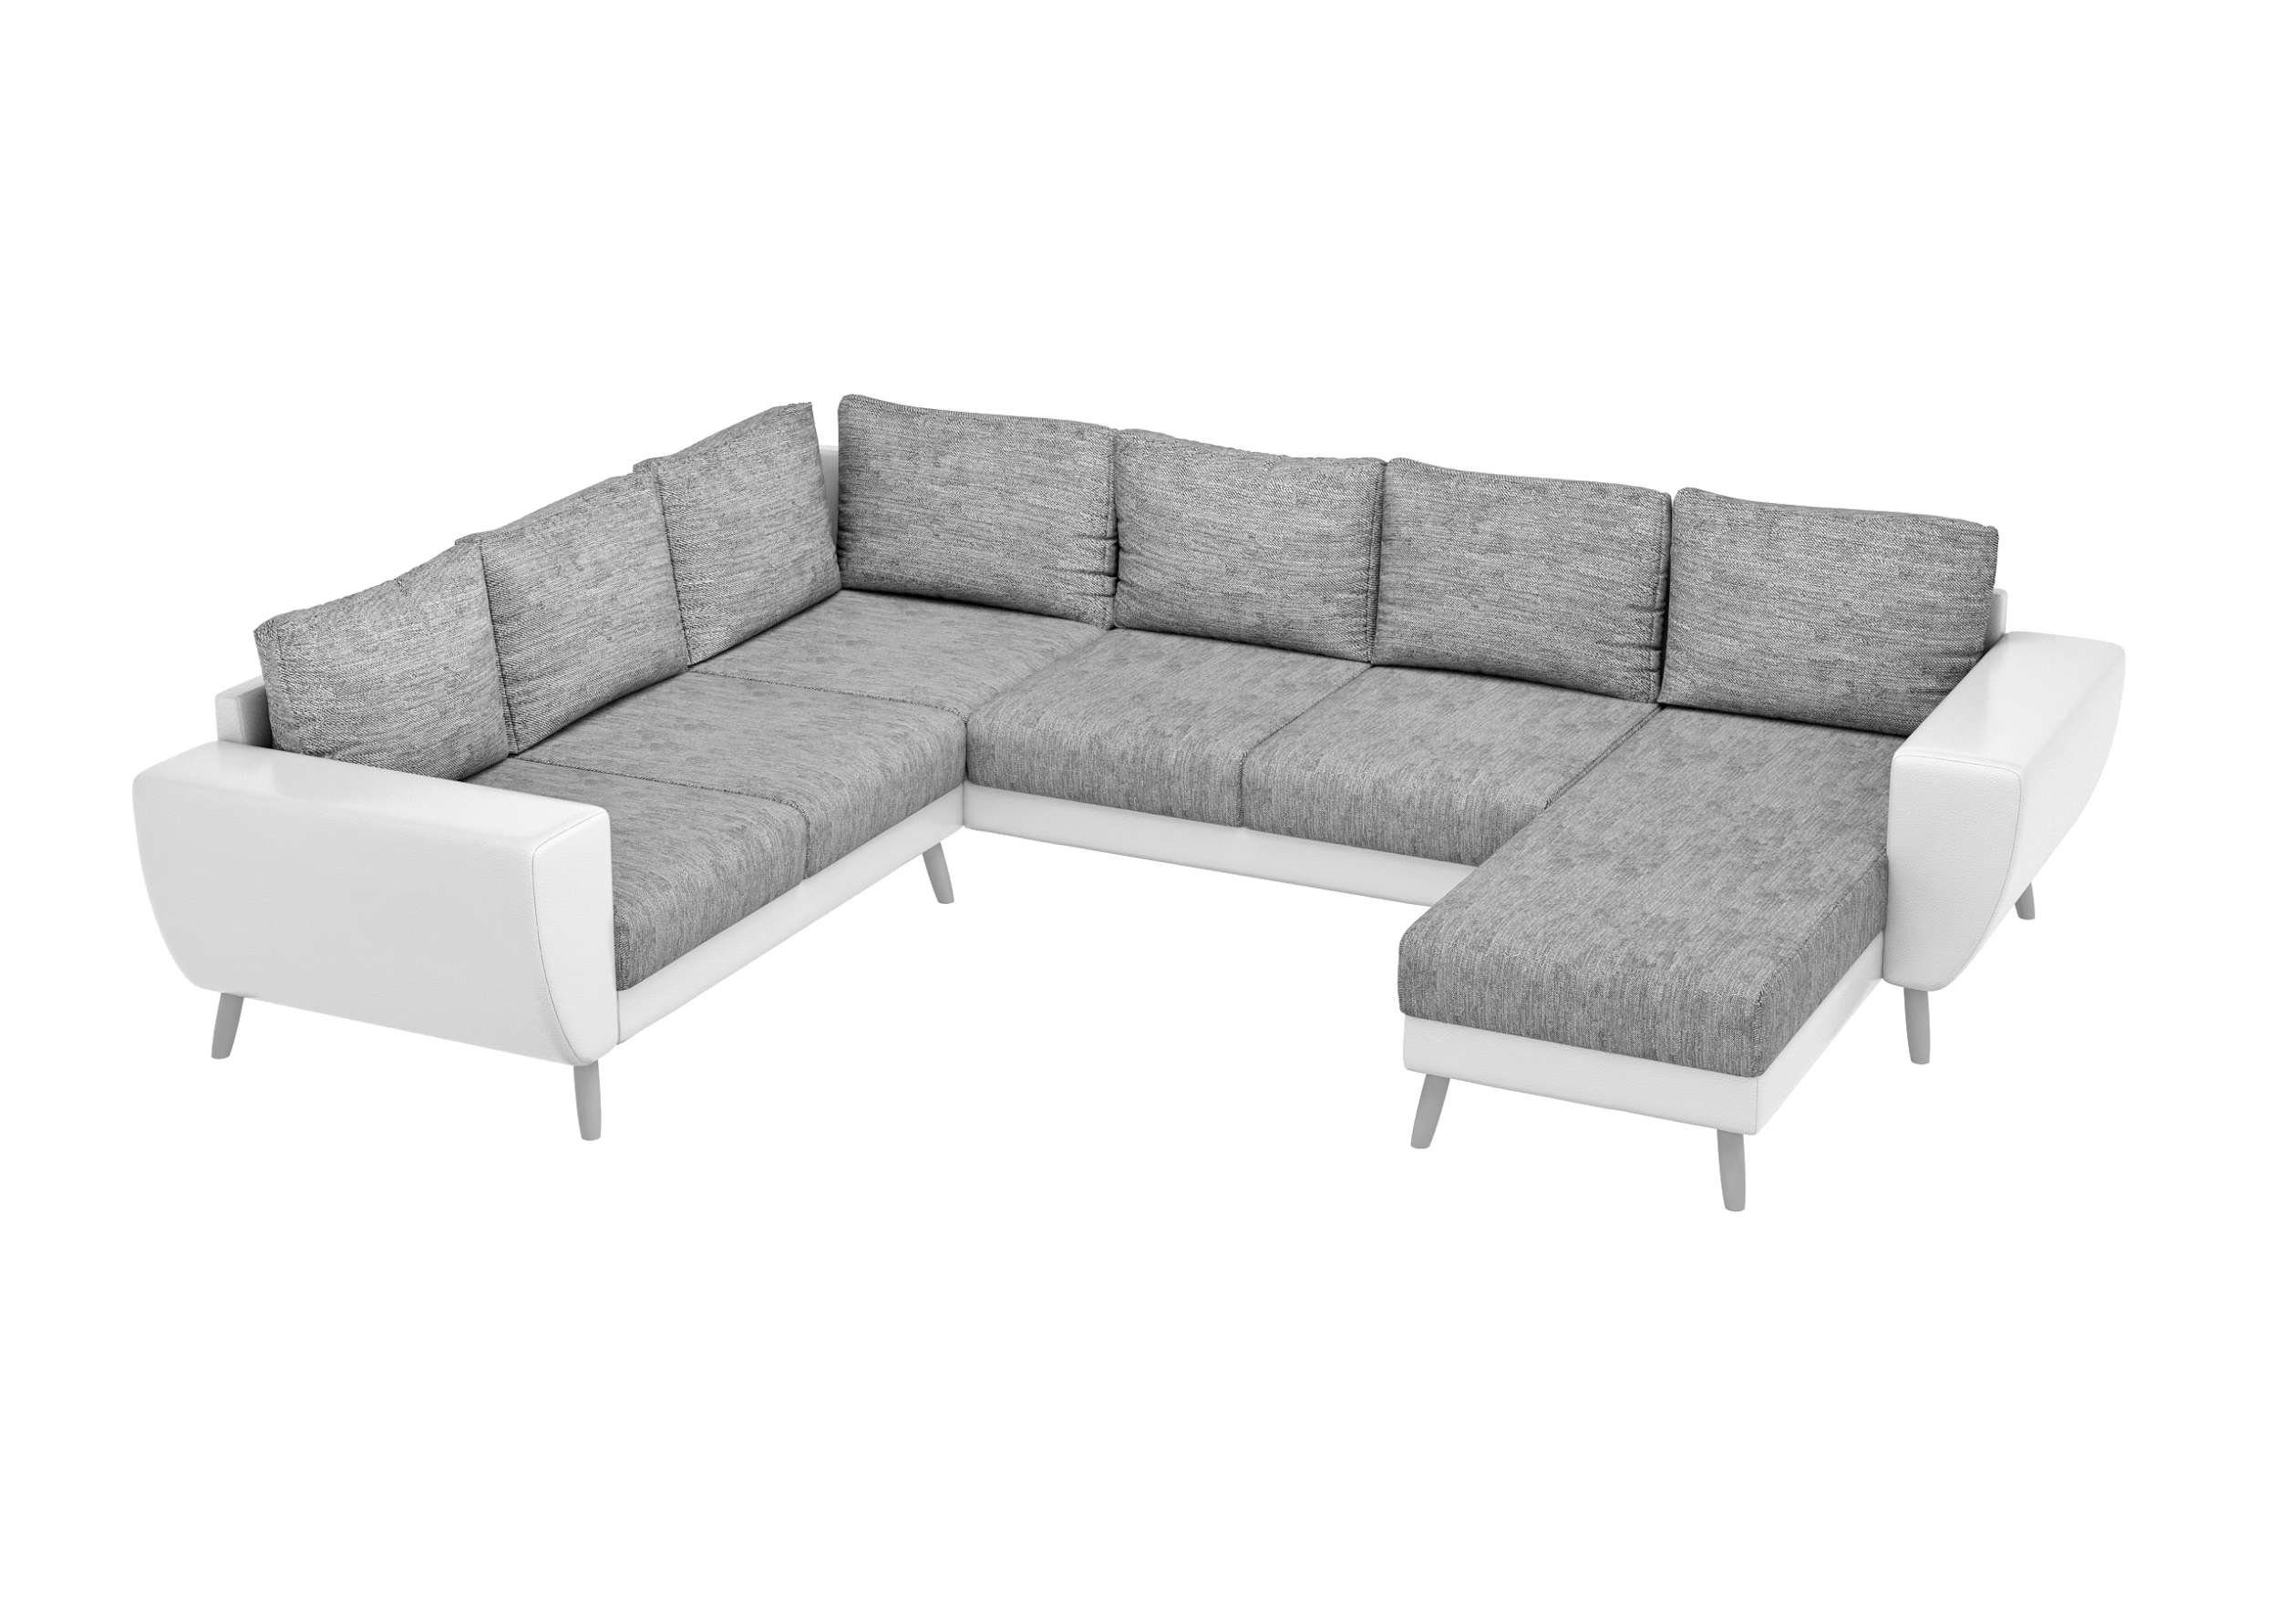 Apollo, oder rechts bestellbar, Modern Wellenfederung Stylefy Design, Wohnlandschaft stellbar, mit Raum U-Form, im links Sofa, frei mane